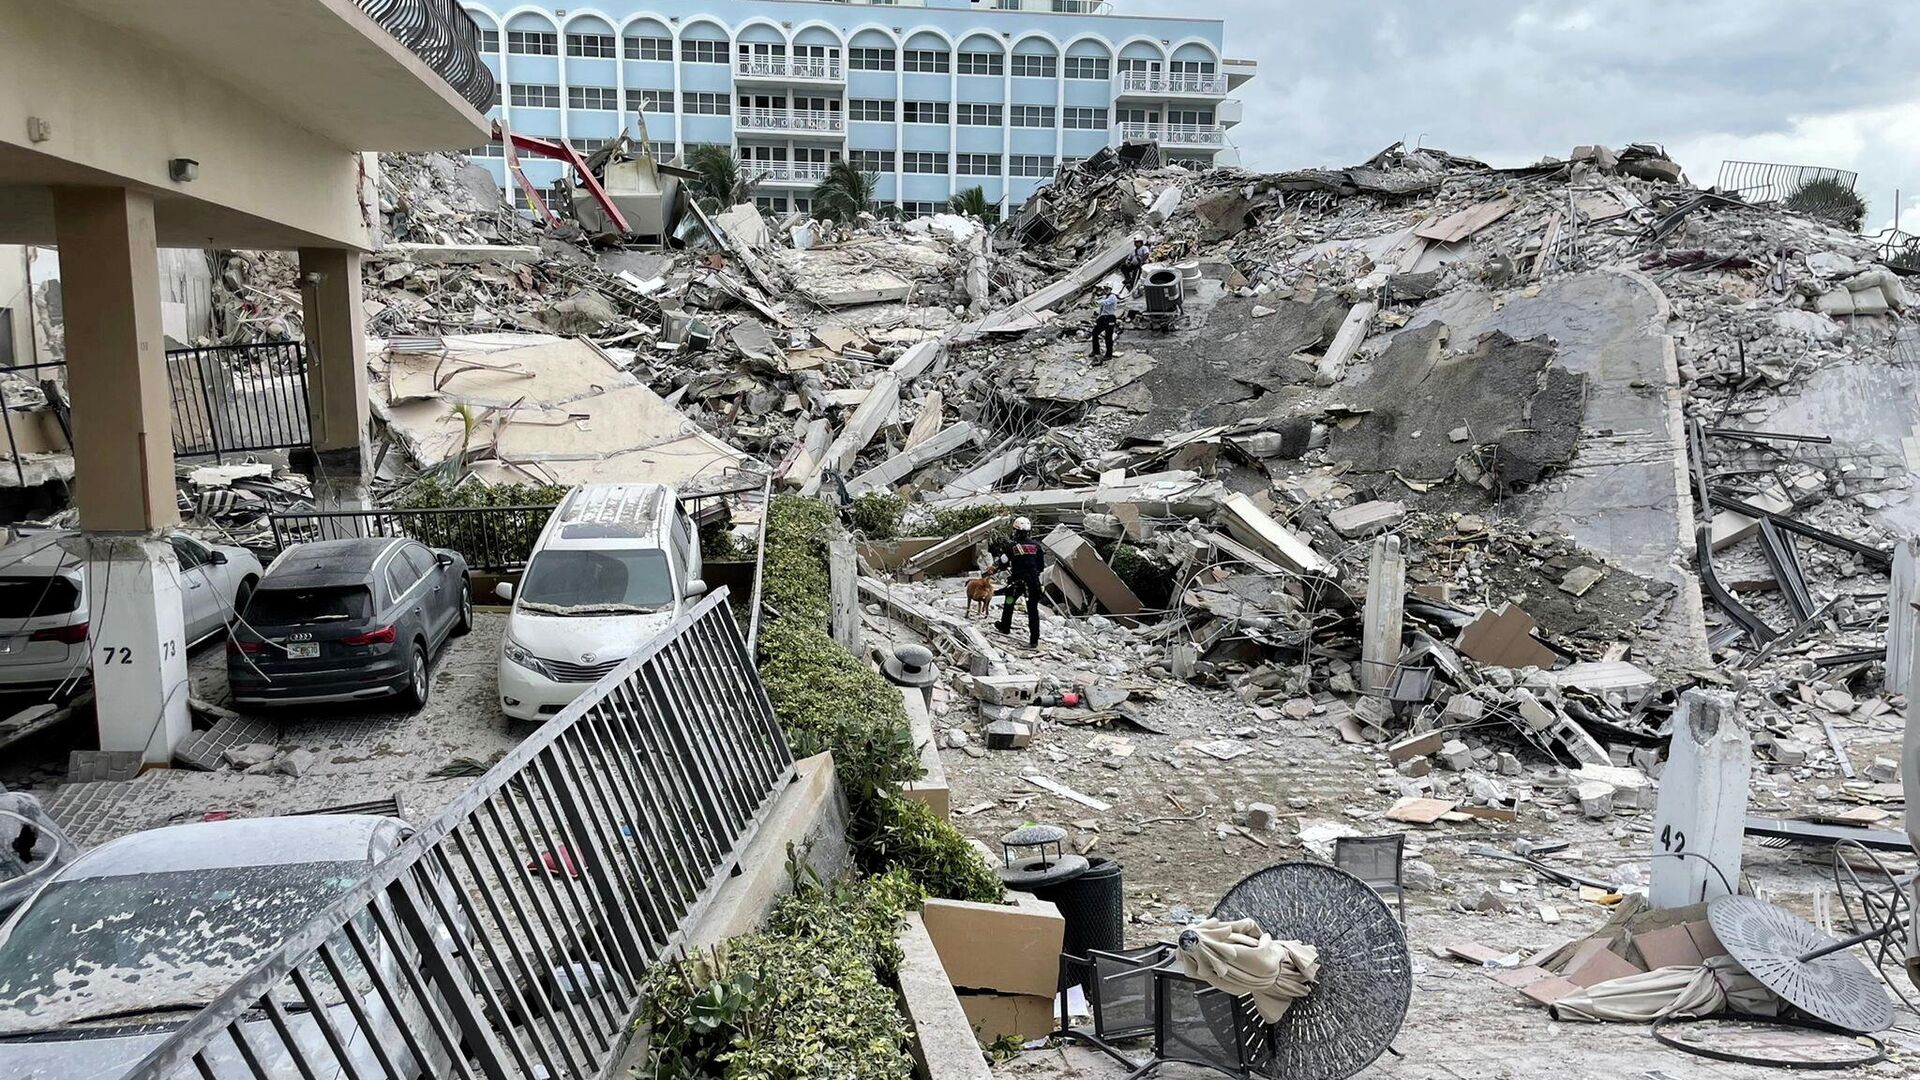 Судьба 159 человек остается неизвестной после обрушения дома во Флориде